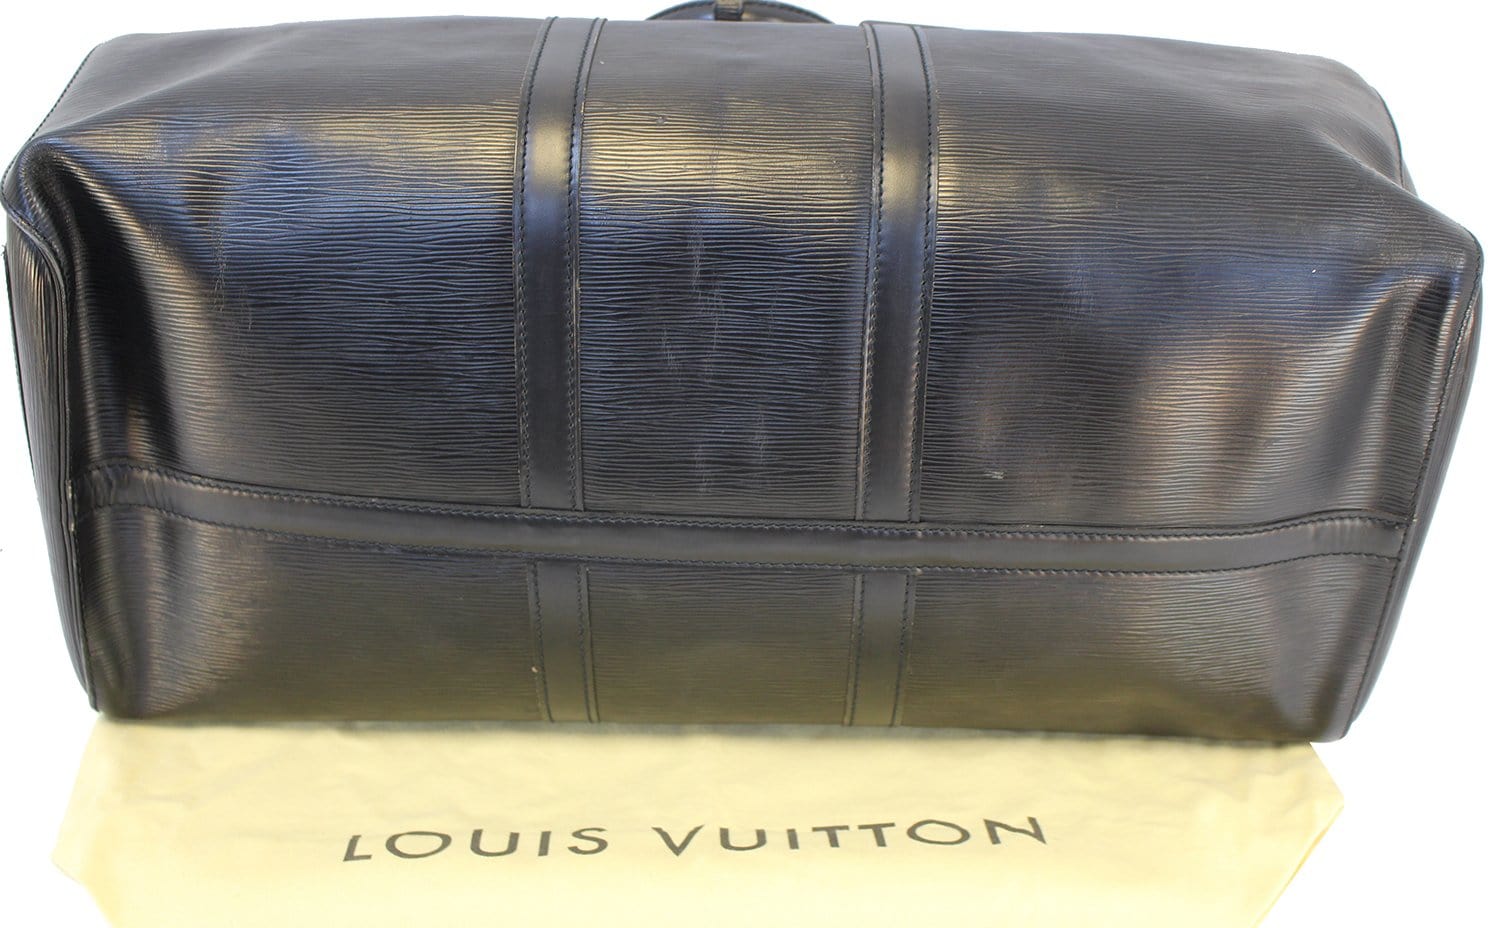 LOUIS VUITTON Boston bag M42955 Keepall 55 Epi Epi Leather blue unisex –